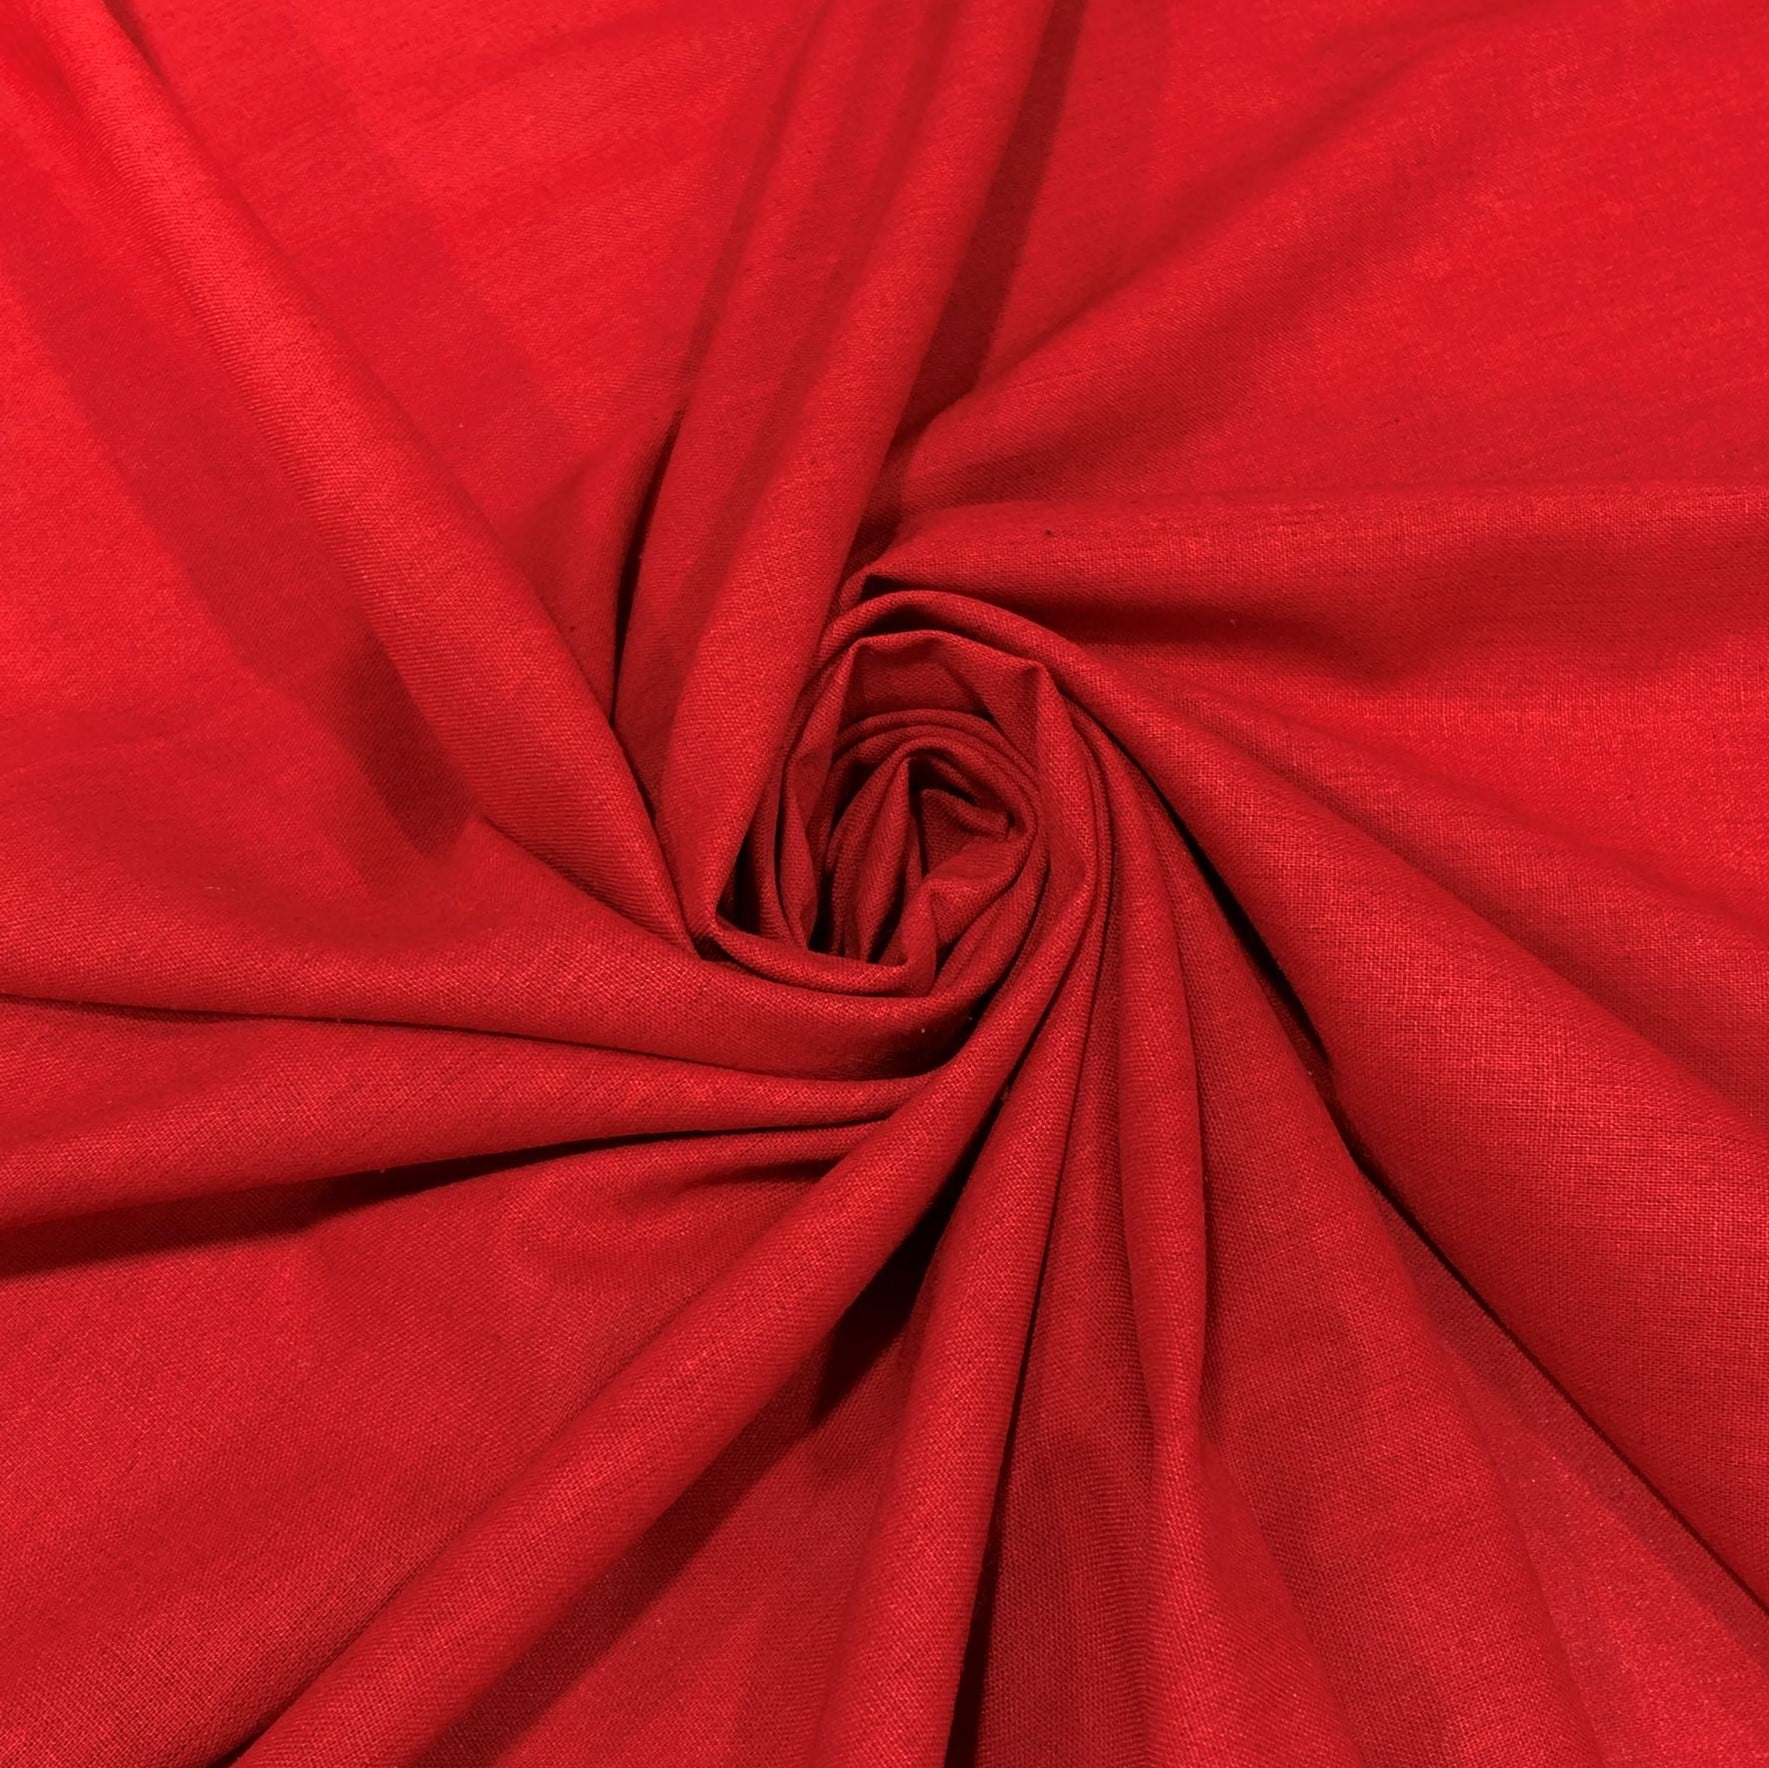 Tecido Linho Misto Vermelho - Empório dos Tecidos 